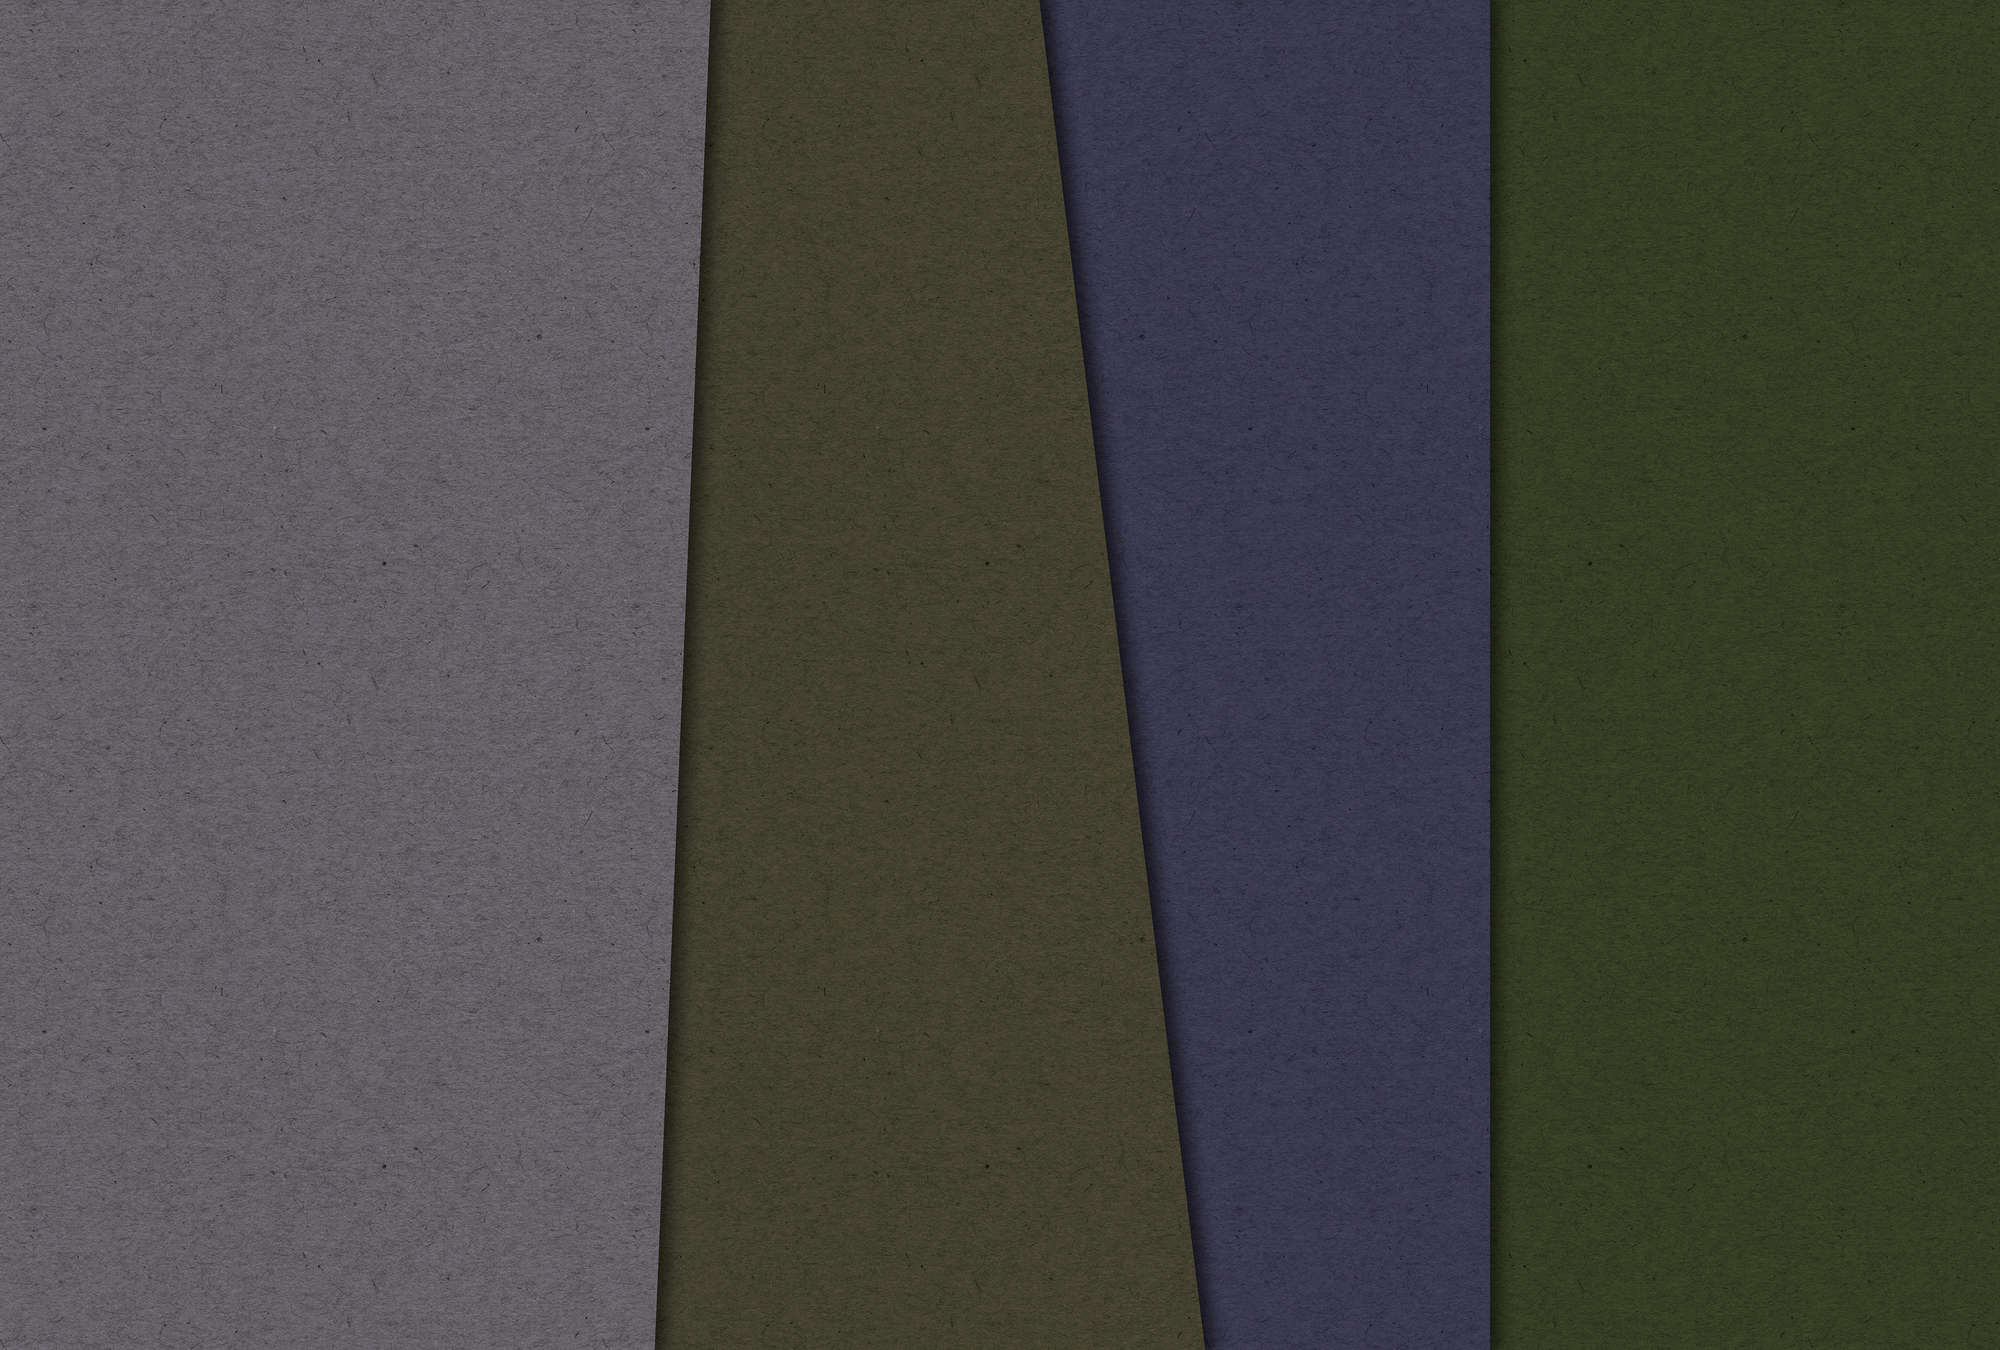             Gelaagd karton 3 - Digital behang minimalistisch & abstract - kartonnen structuur - Groen, Paars | Pearl glad vlies
        